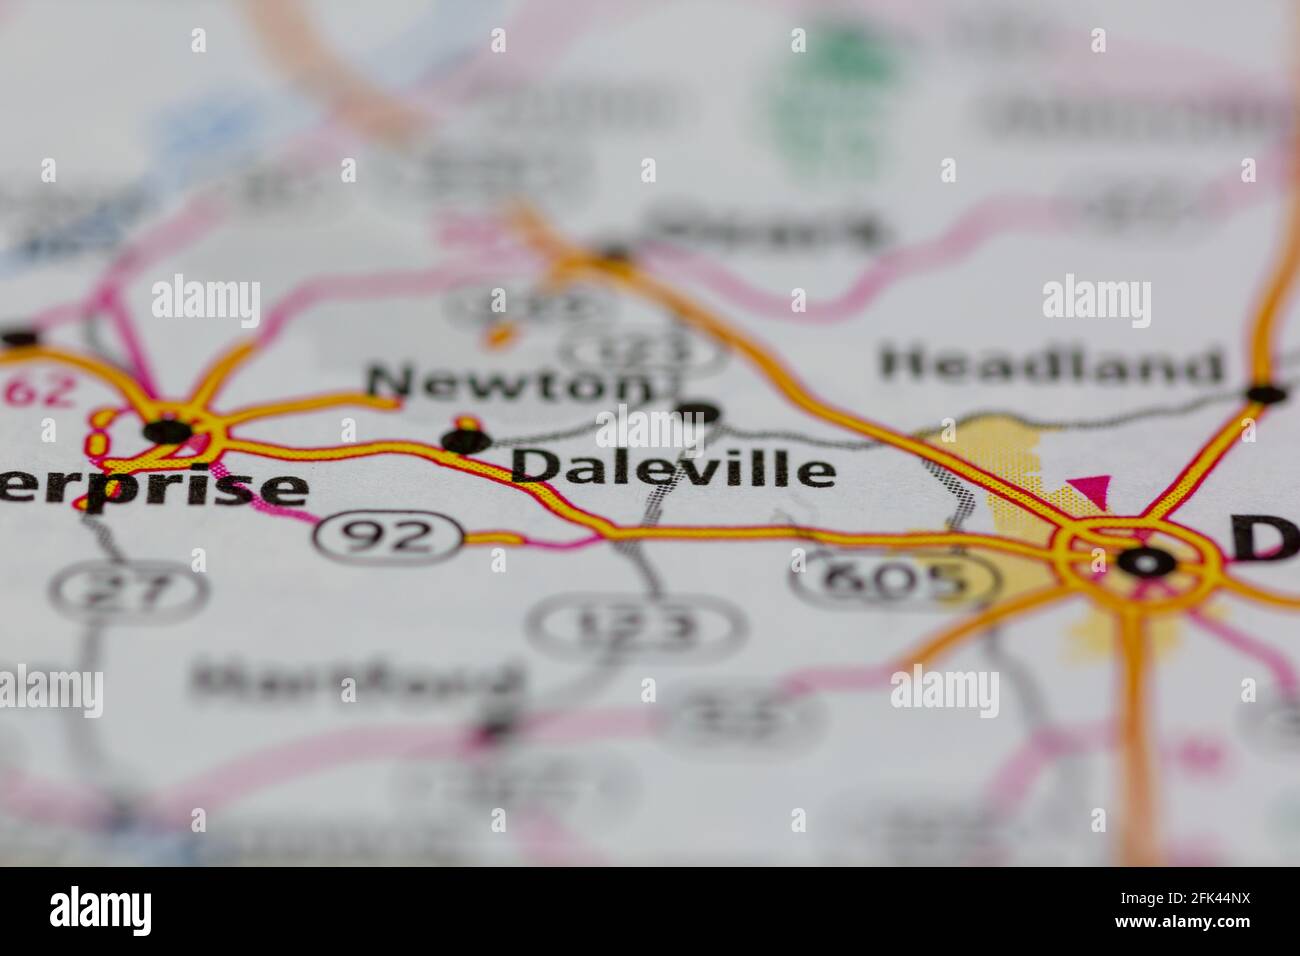 Daleville Alabama USA montré sur une carte géographique ou une route carte Banque D'Images